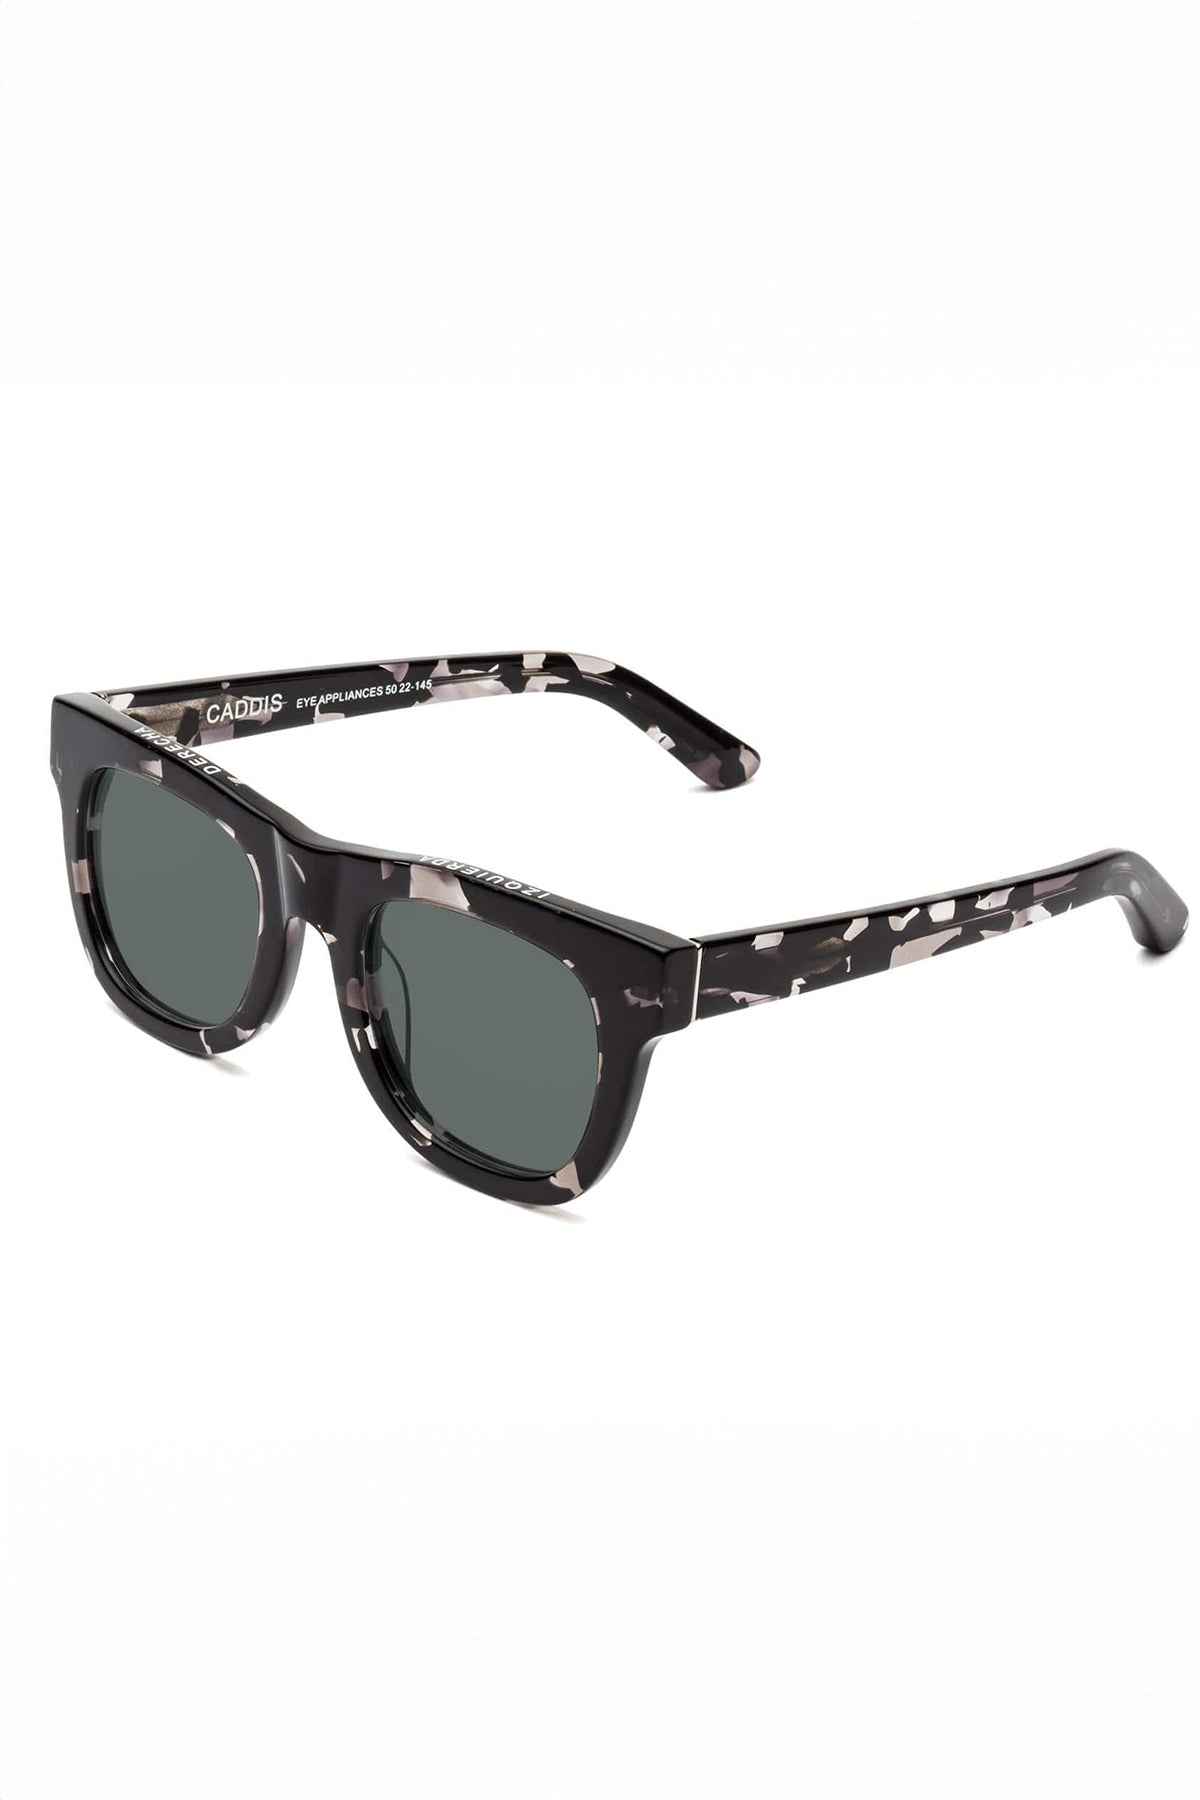 Caddis D28 Sunglasses